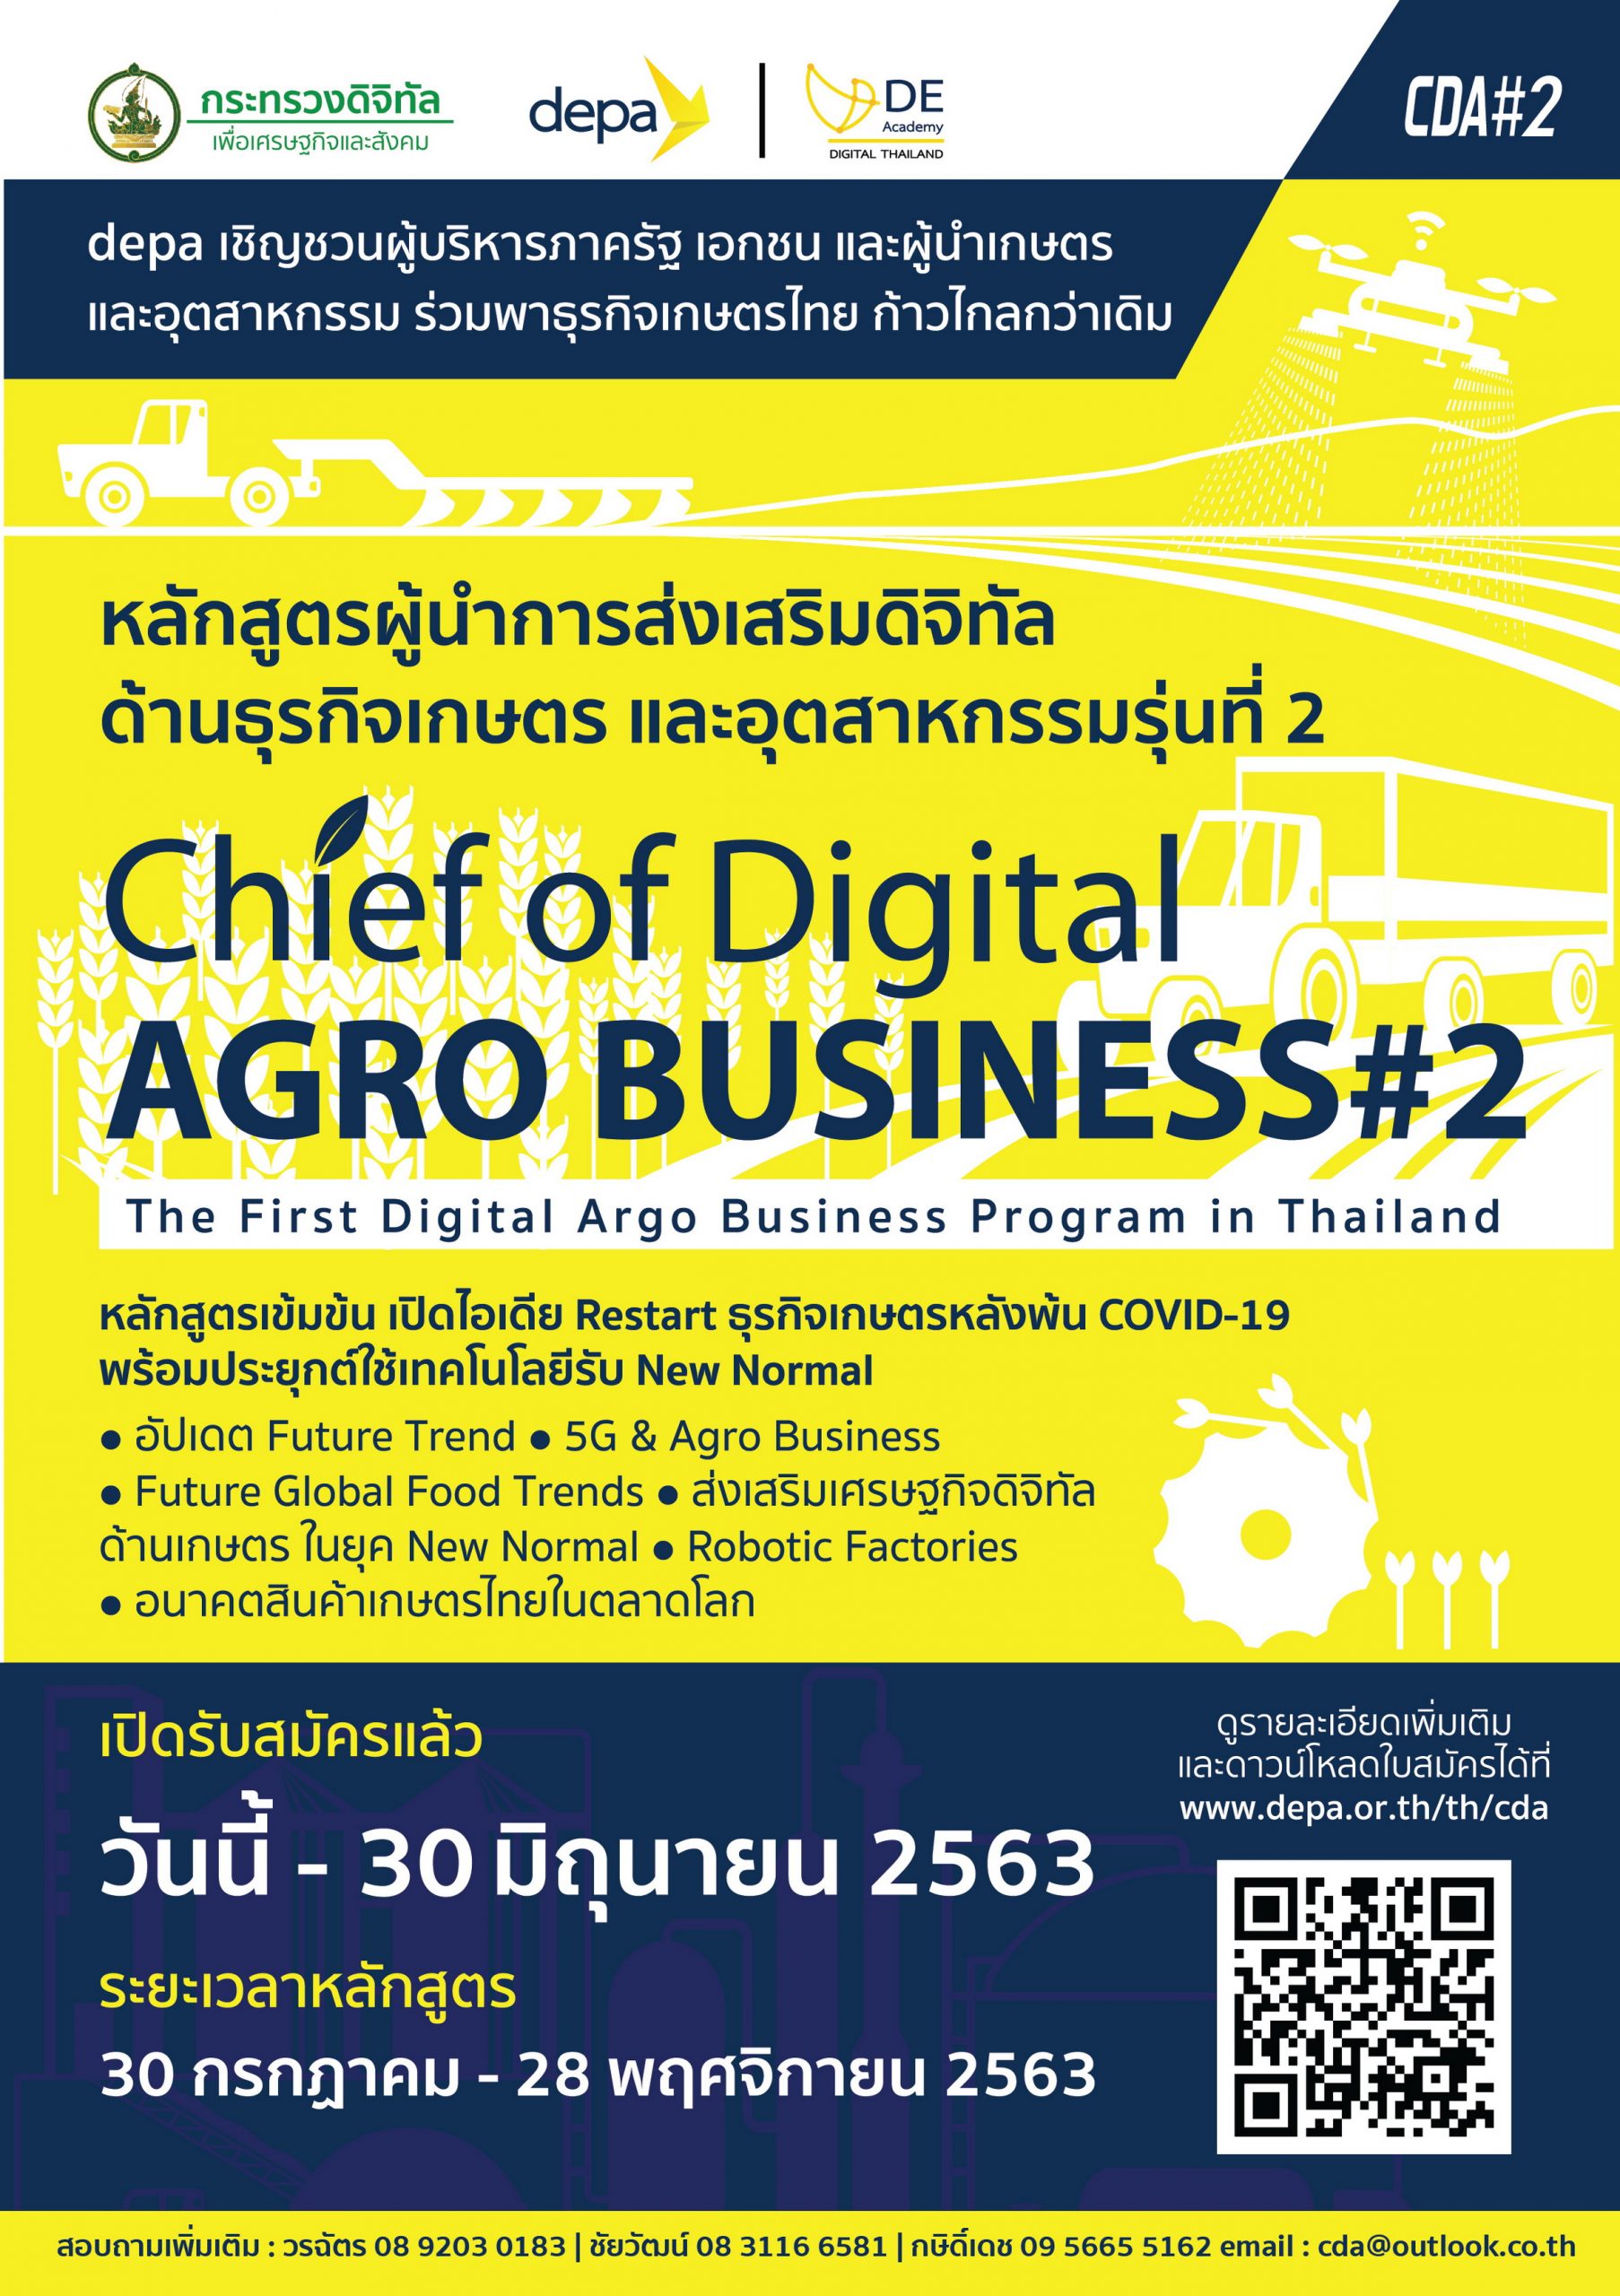 ดีป้า ปรับเข้ม หลักสูตรผู้นำการส่งเสริมดิจิทัลด้านธุรกิจเกษตร รุ่น 2 มุ่งสร้างการประยุกต์ใช้เทคโนโลยี-นวัตกรรมดิจิทัลในแวดวงเกษตรไทย